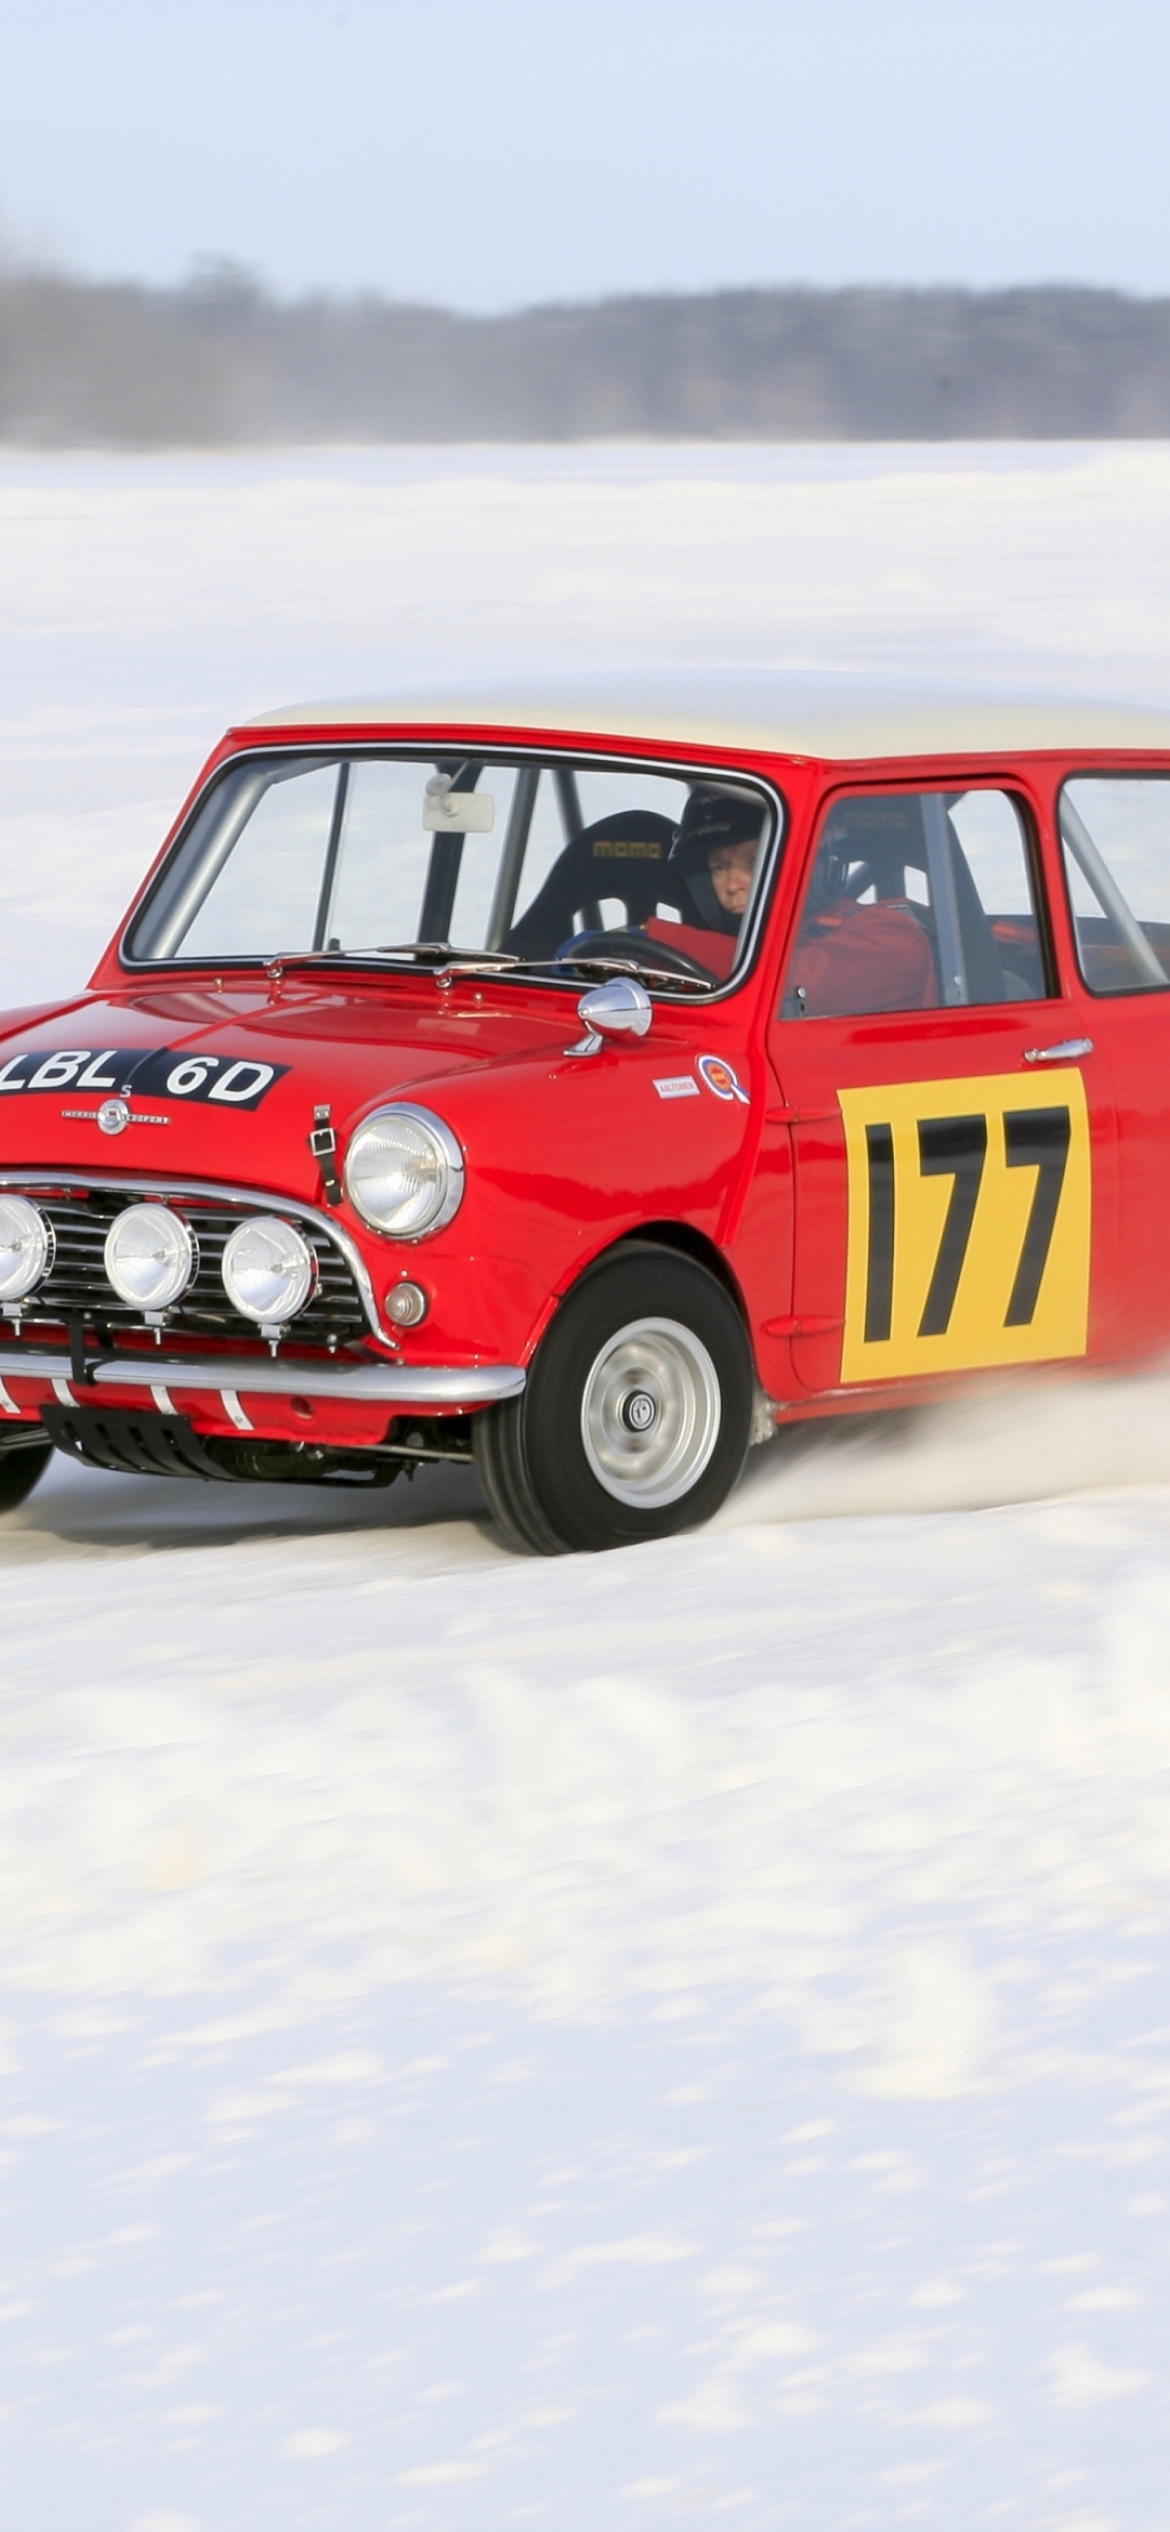 Das Red Mini In Snow Wallpaper 1170x2532